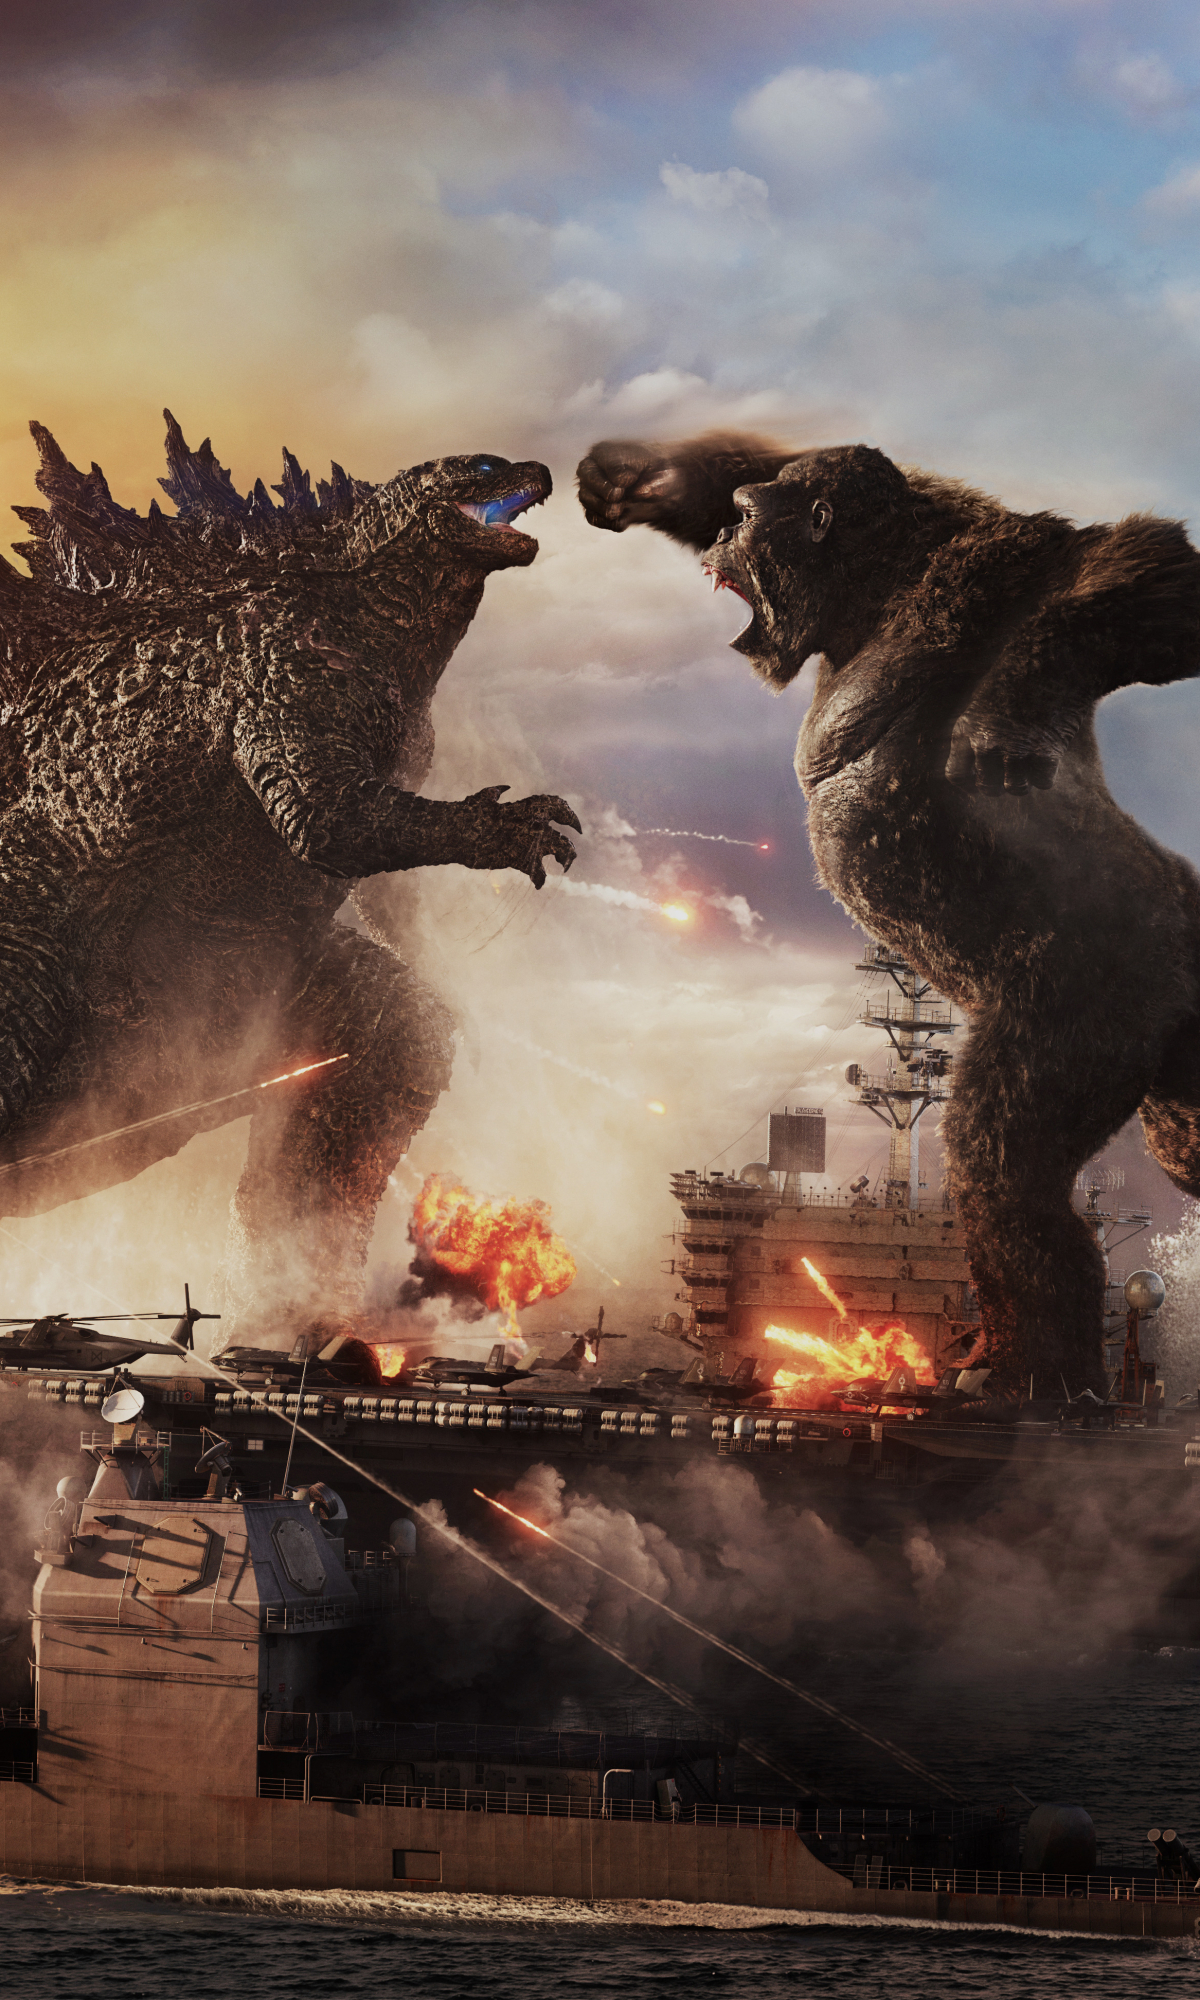 Descarga gratuita de fondo de pantalla para móvil de Películas, Godzilla, Rey Kong, Godzilla (Monsterverso), Godzilla Vs Kong, Monstruoverso.